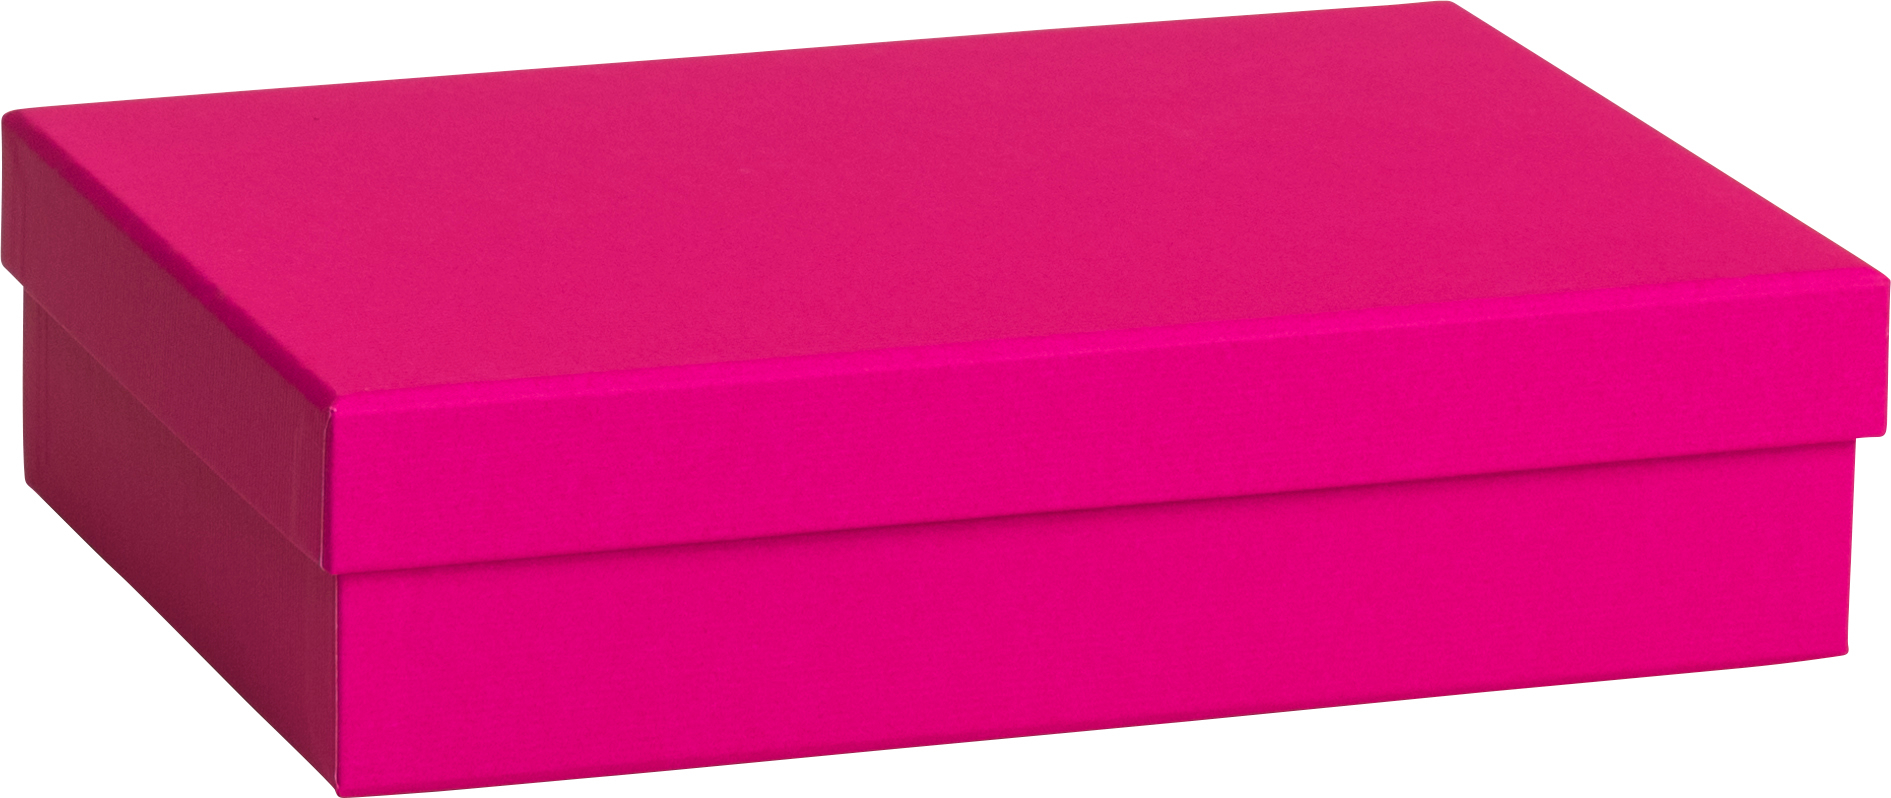 STEWO Boîte cadeau One Colour 2551783692 pink 16.5x24x6cm